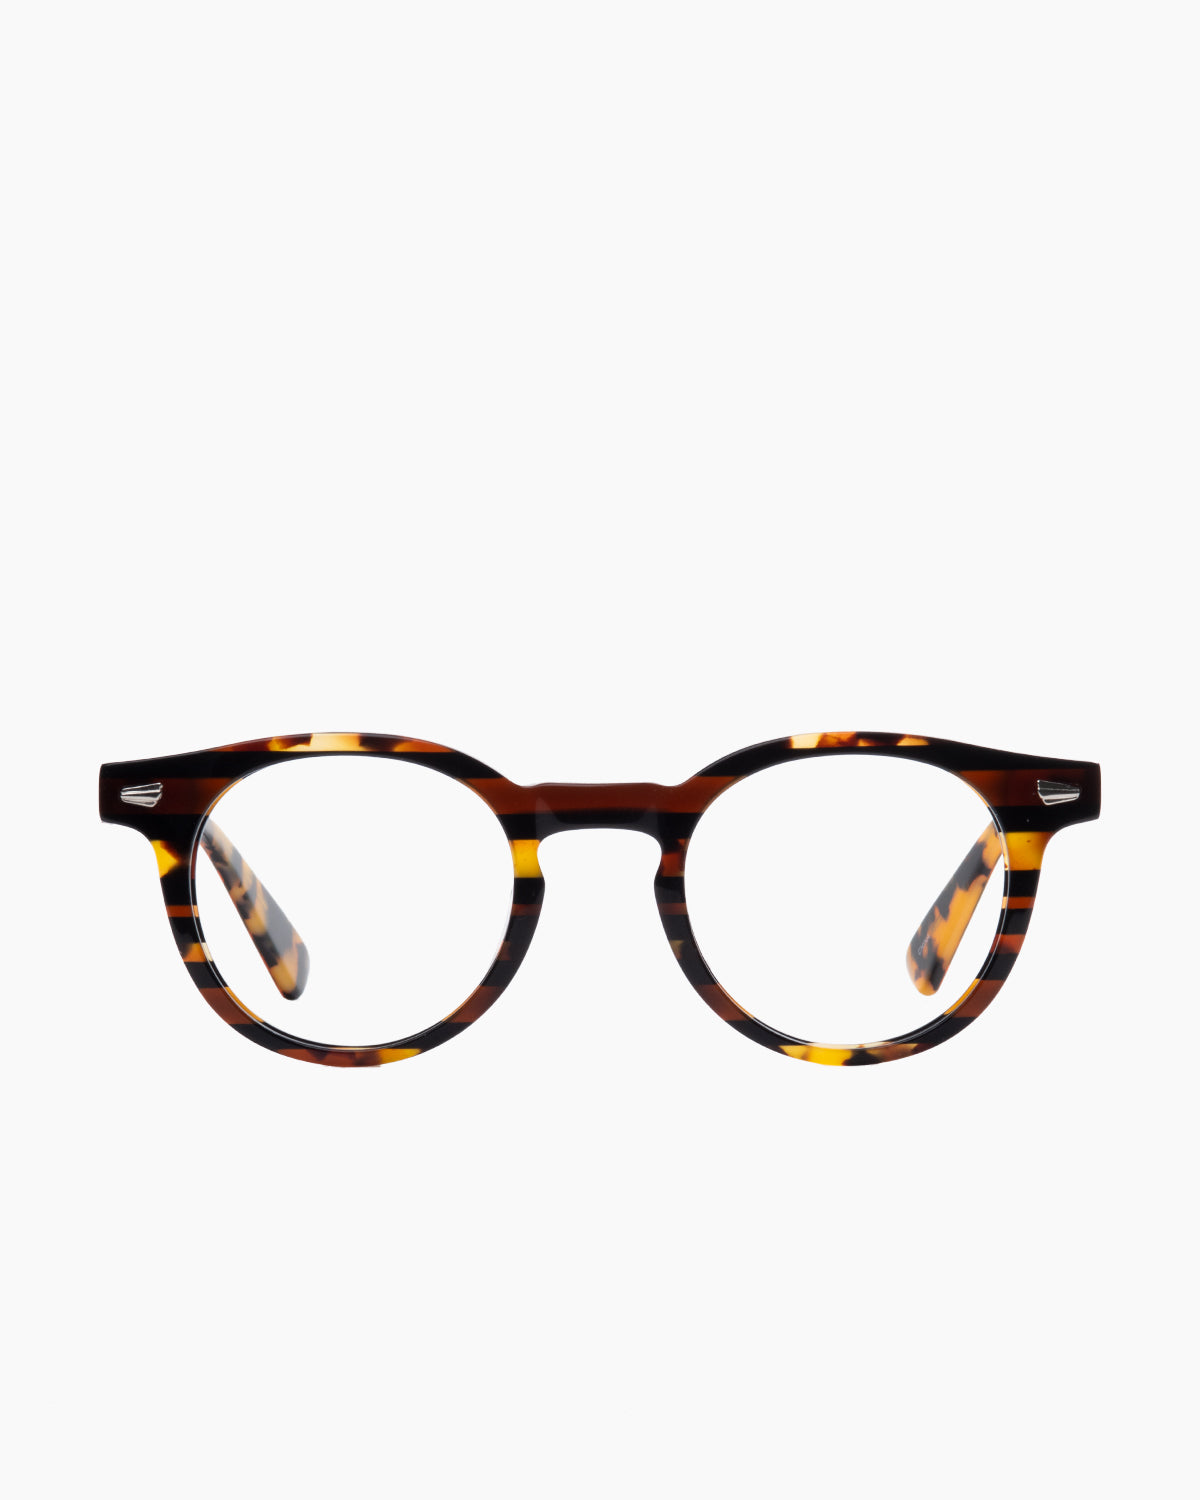 Evolve - drew - 279 | Bar à lunettes:  Marie-Sophie Dion